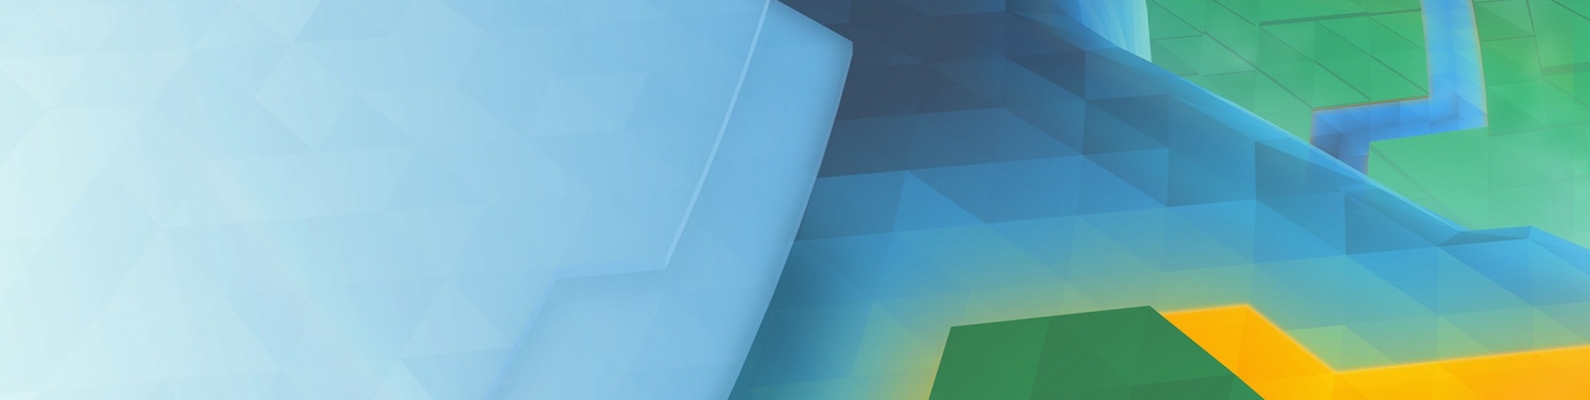 геометрические фигуры, Голубой, Абстракция, Треугольники, Углы, Зеленый, KDE